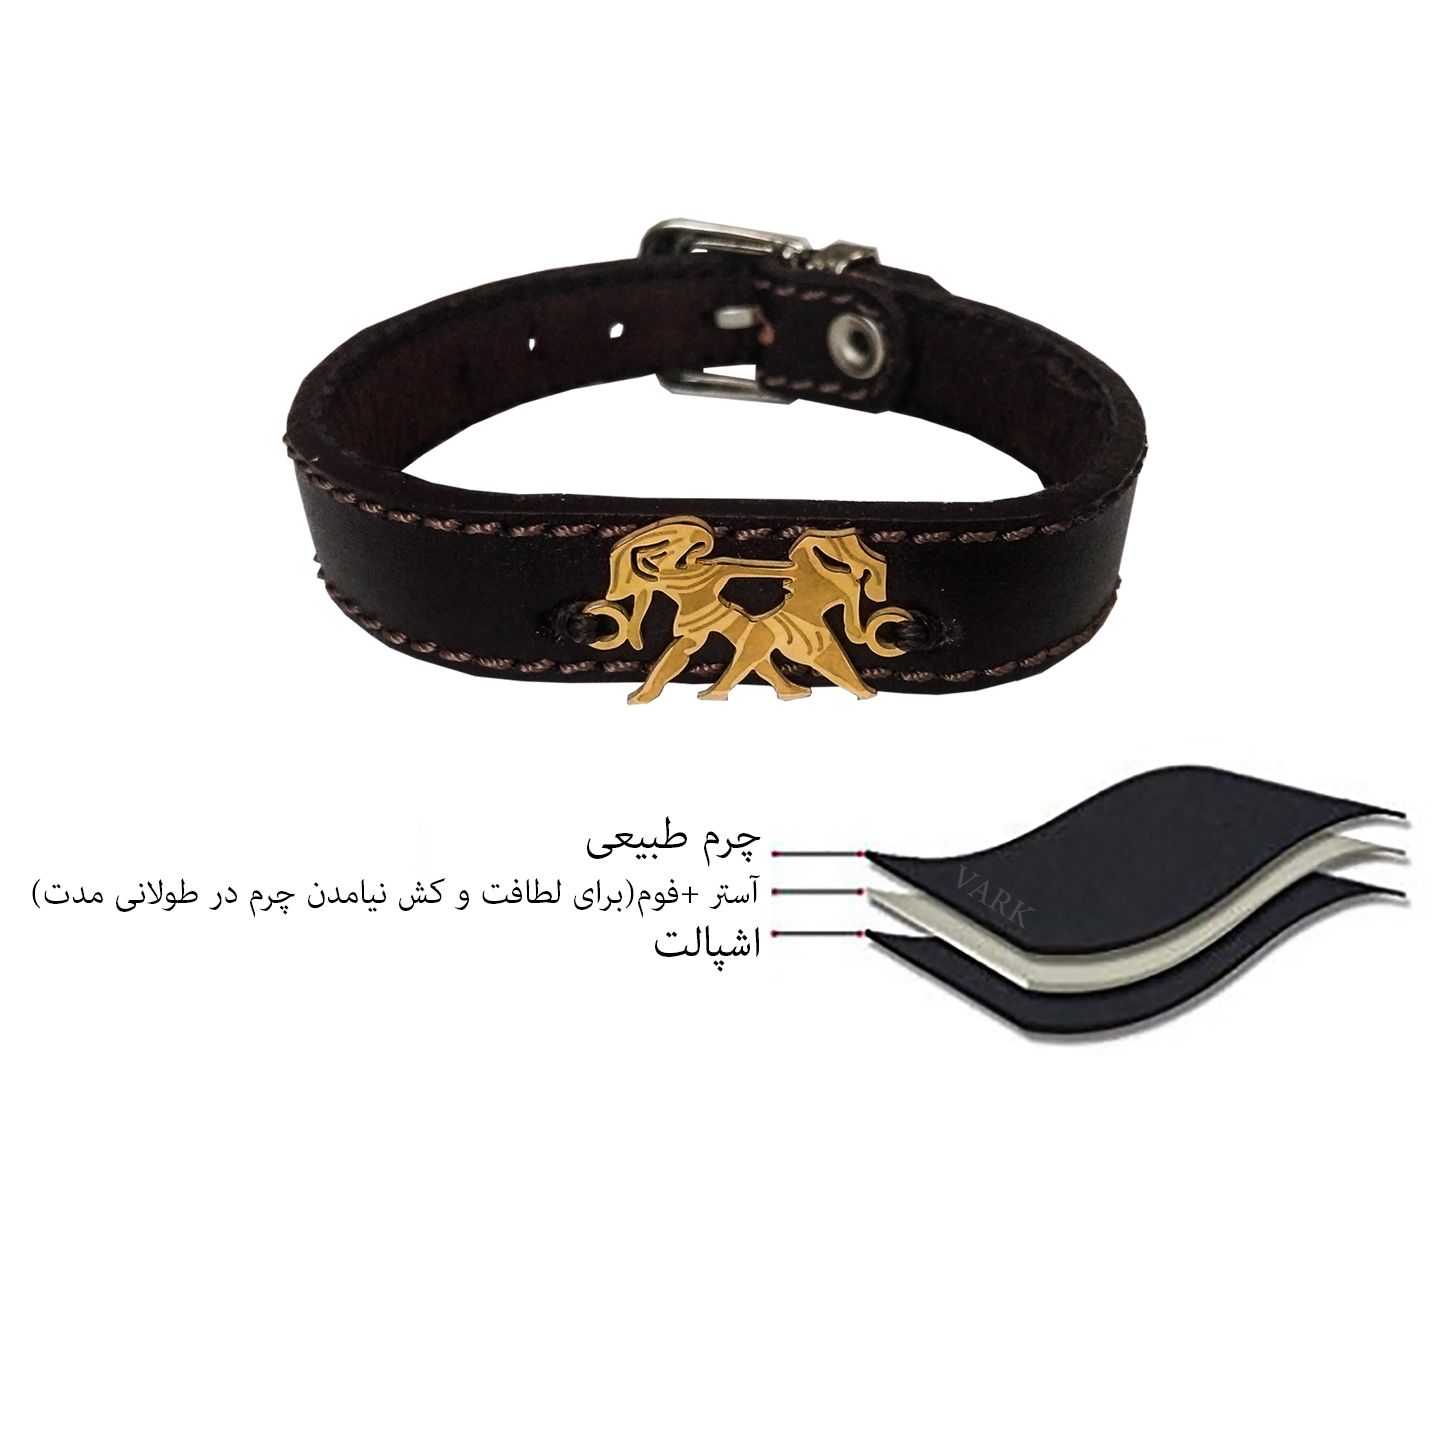 دستبند چرم وارک طرح نماد خرداد مدل لیبرا کد rb119 -  - 9